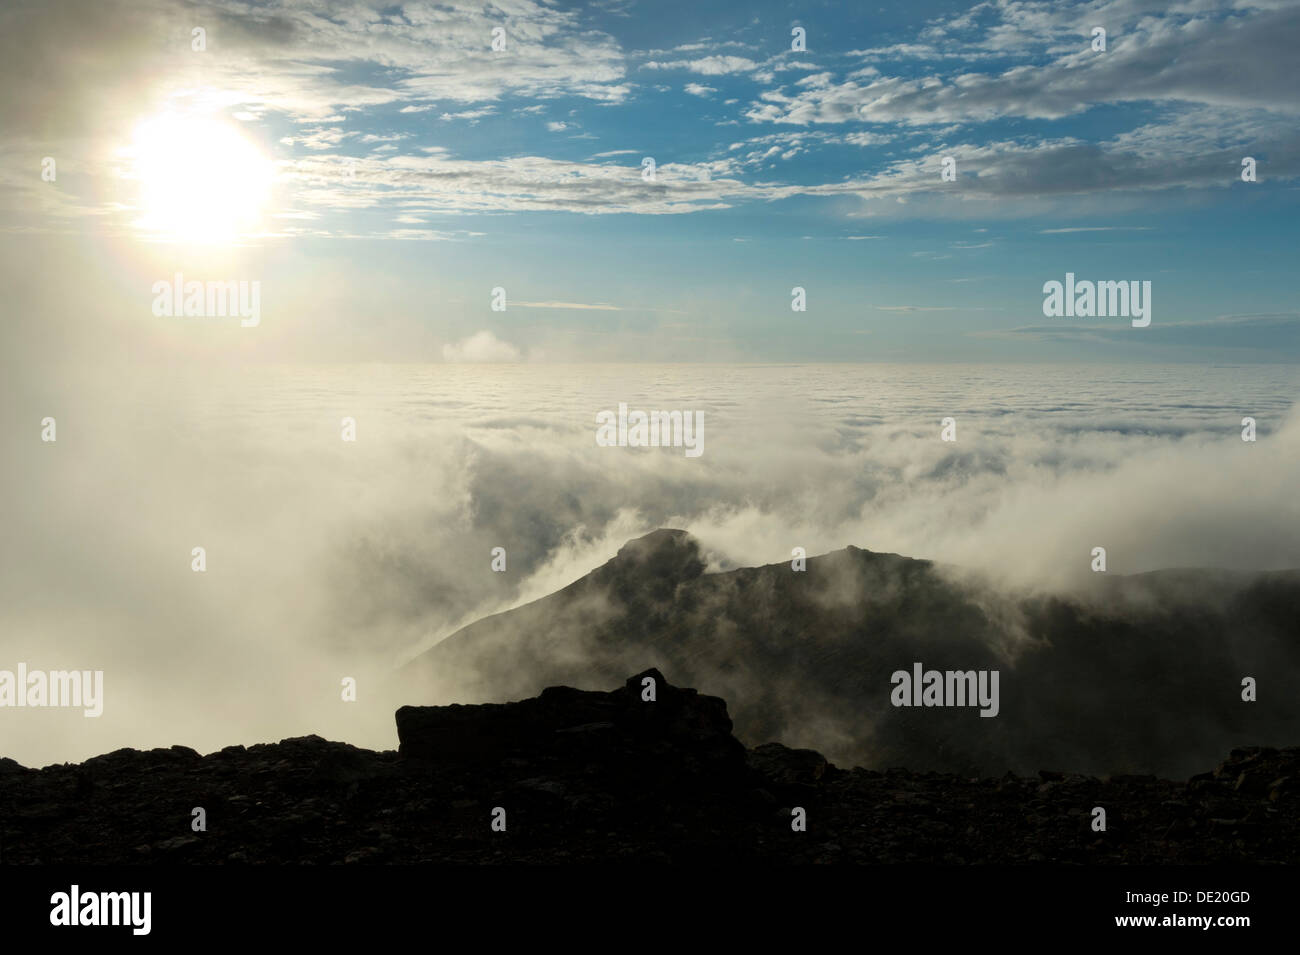 Bewegt sich in Wolken, Hintergrundbeleuchtung, Gipfelregion des Mt Slættaratindur, Eysturoy, Färöer Inseln, Dänemark Stockfoto